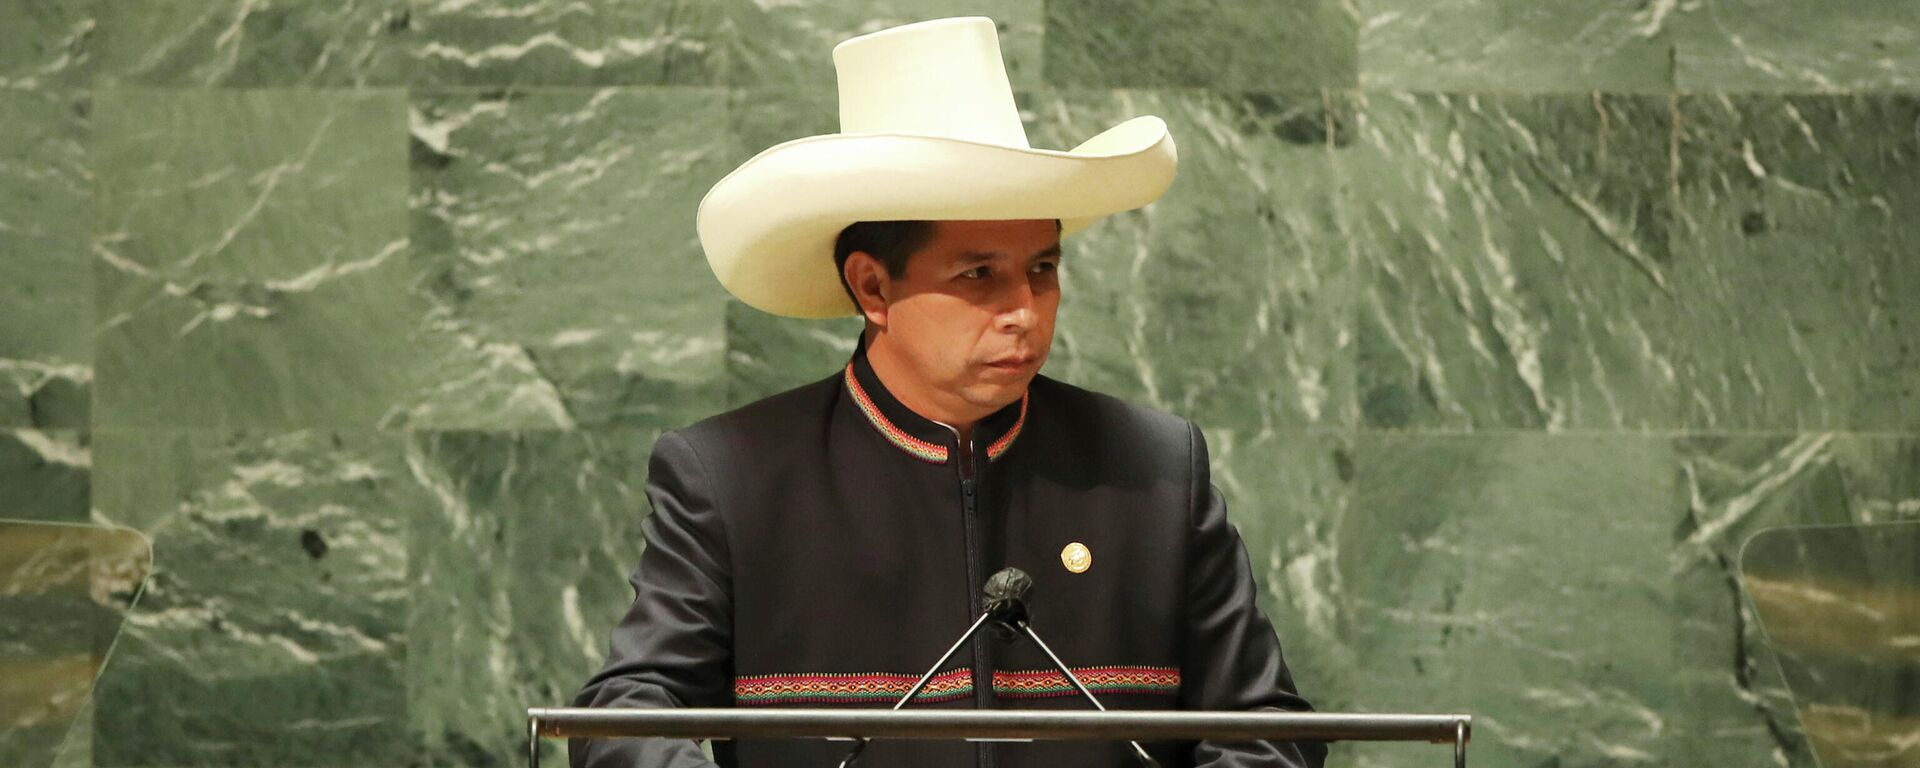 El presidente de Perú, Pedro Castillo, durante la Asamblea General de Naciones Unidas en 2021 - Sputnik Mundo, 1920, 22.09.2021